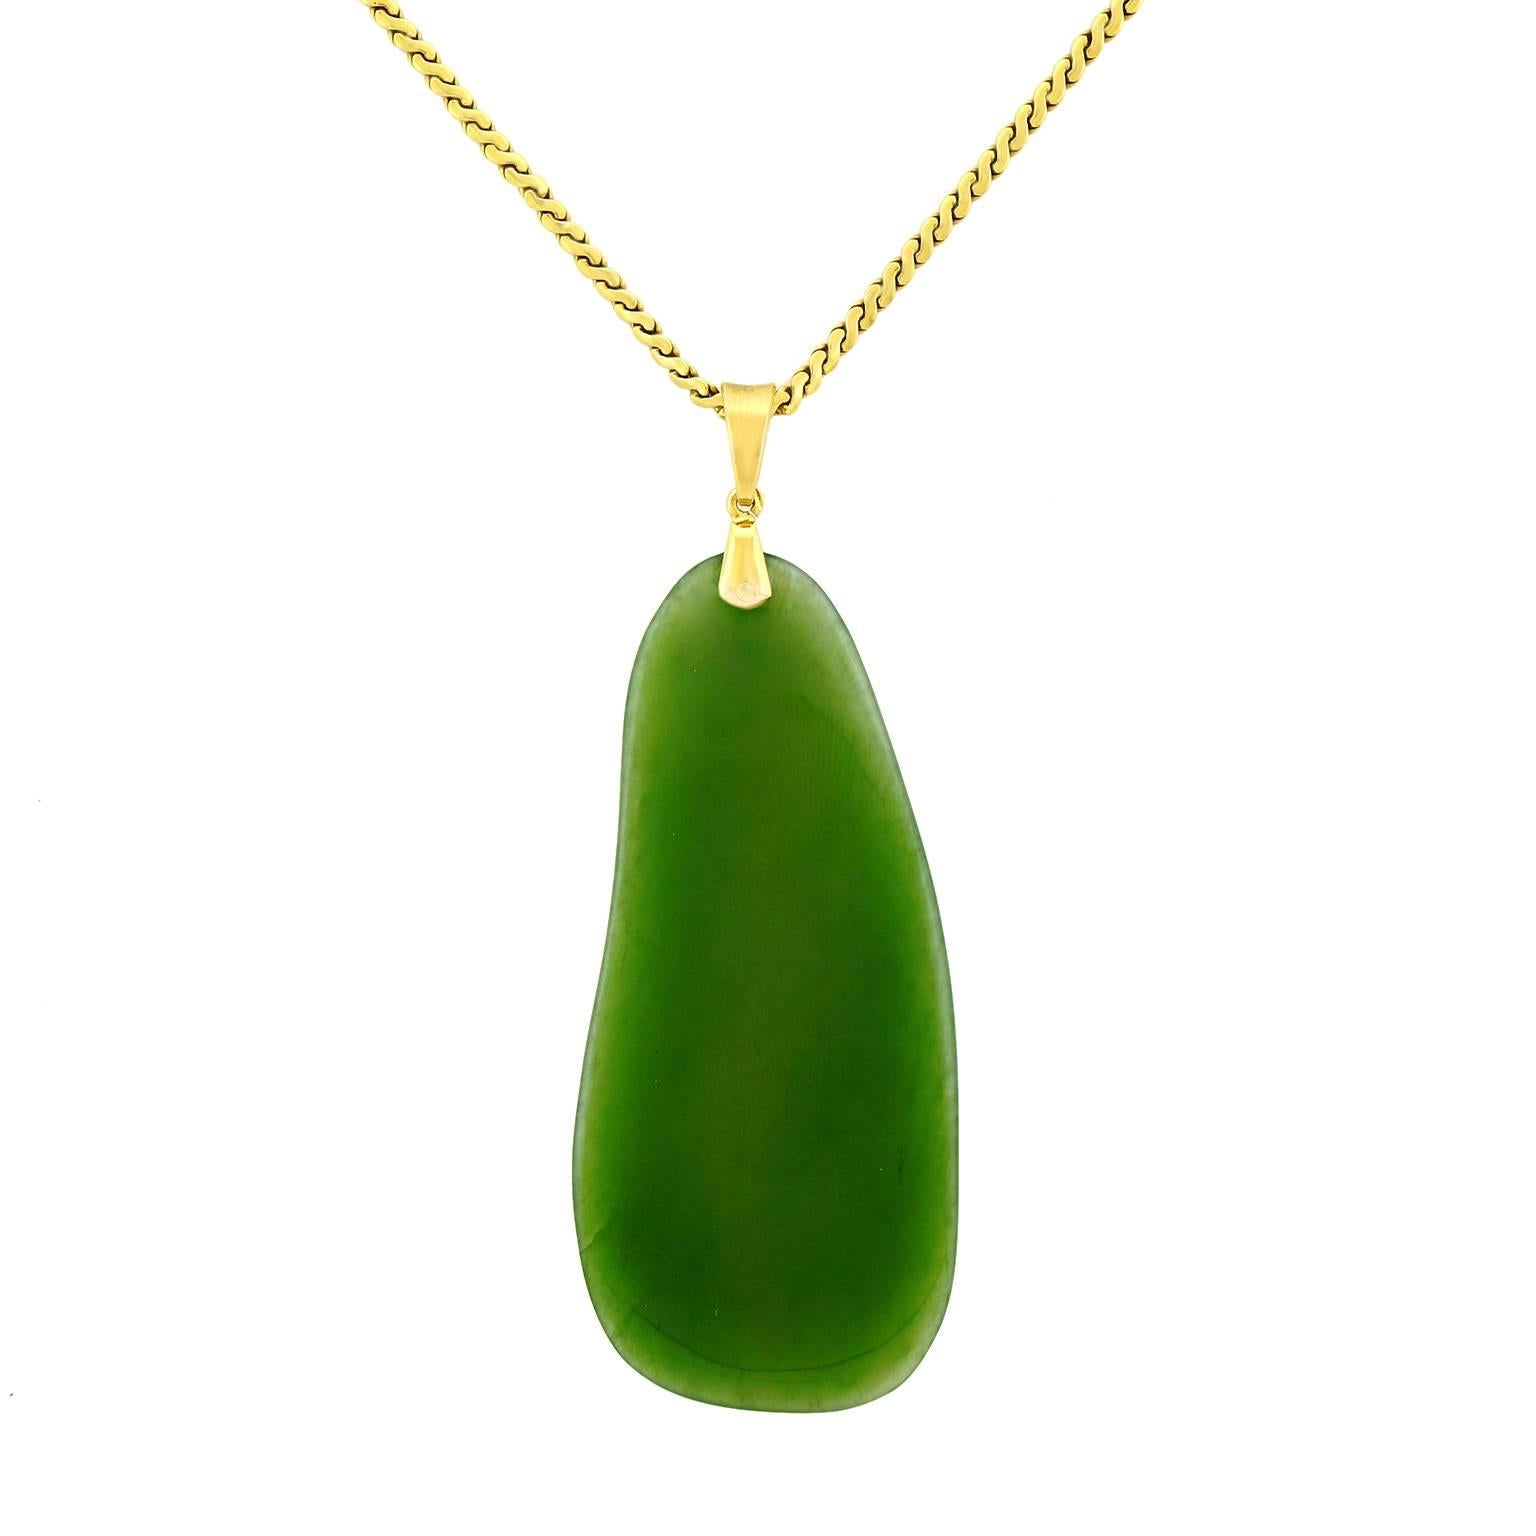 Biomorphic Jade Pendant in Gold